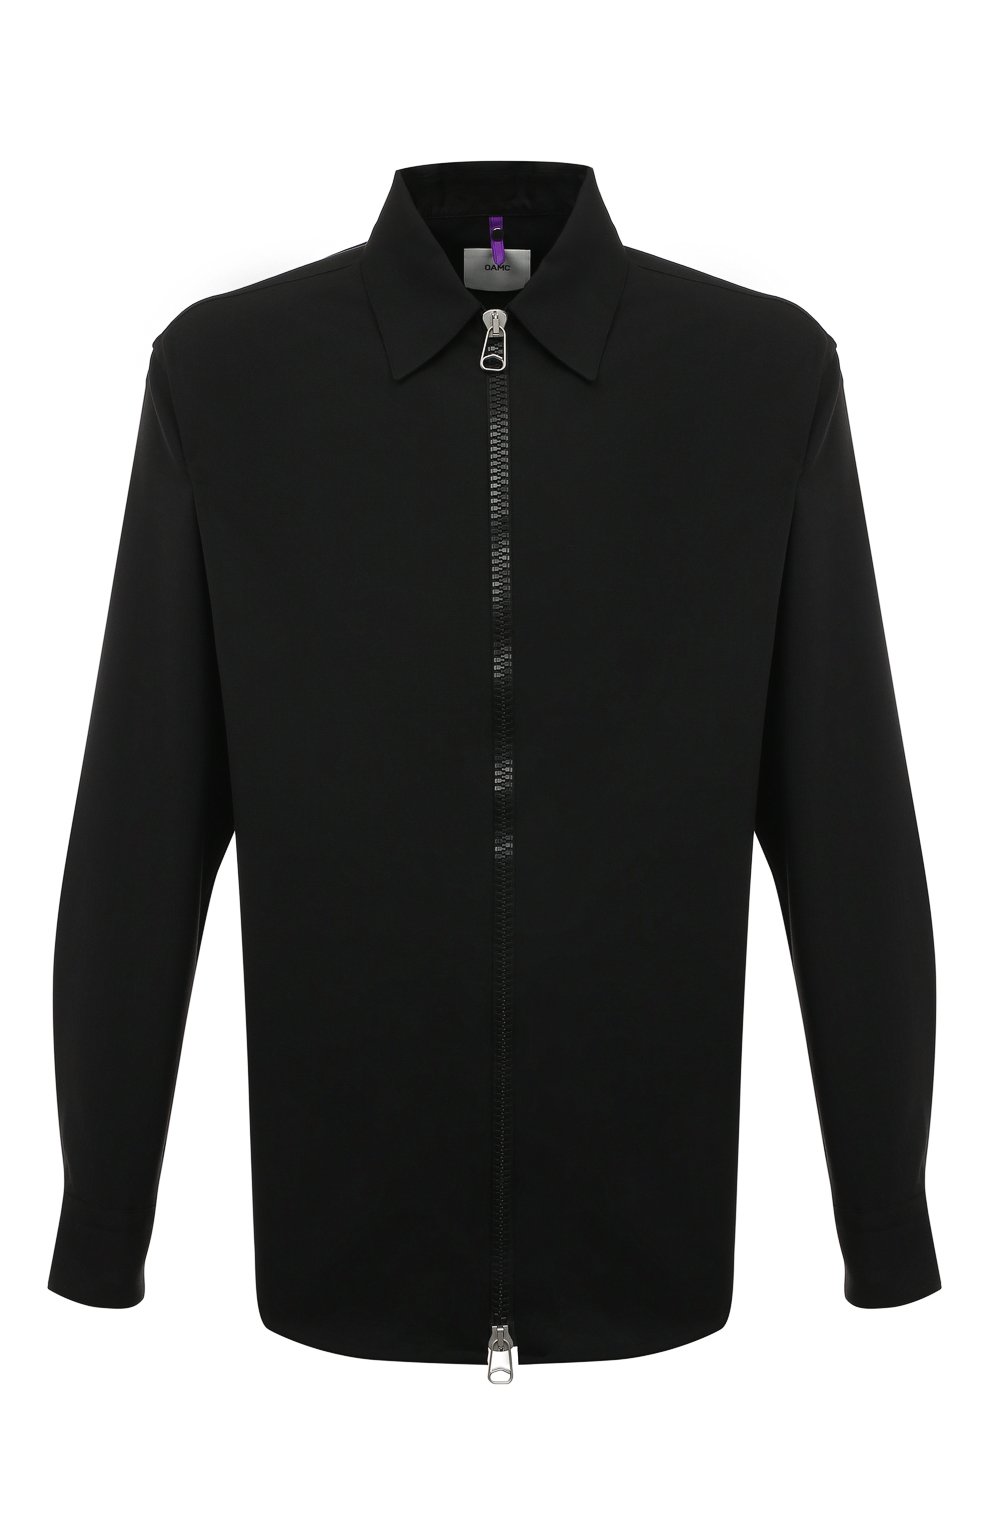 Рубашки Oamc, Шерстяная рубашка Oamc, Италия, Чёрный, Шерсть: 100%;, 13365025  - купить